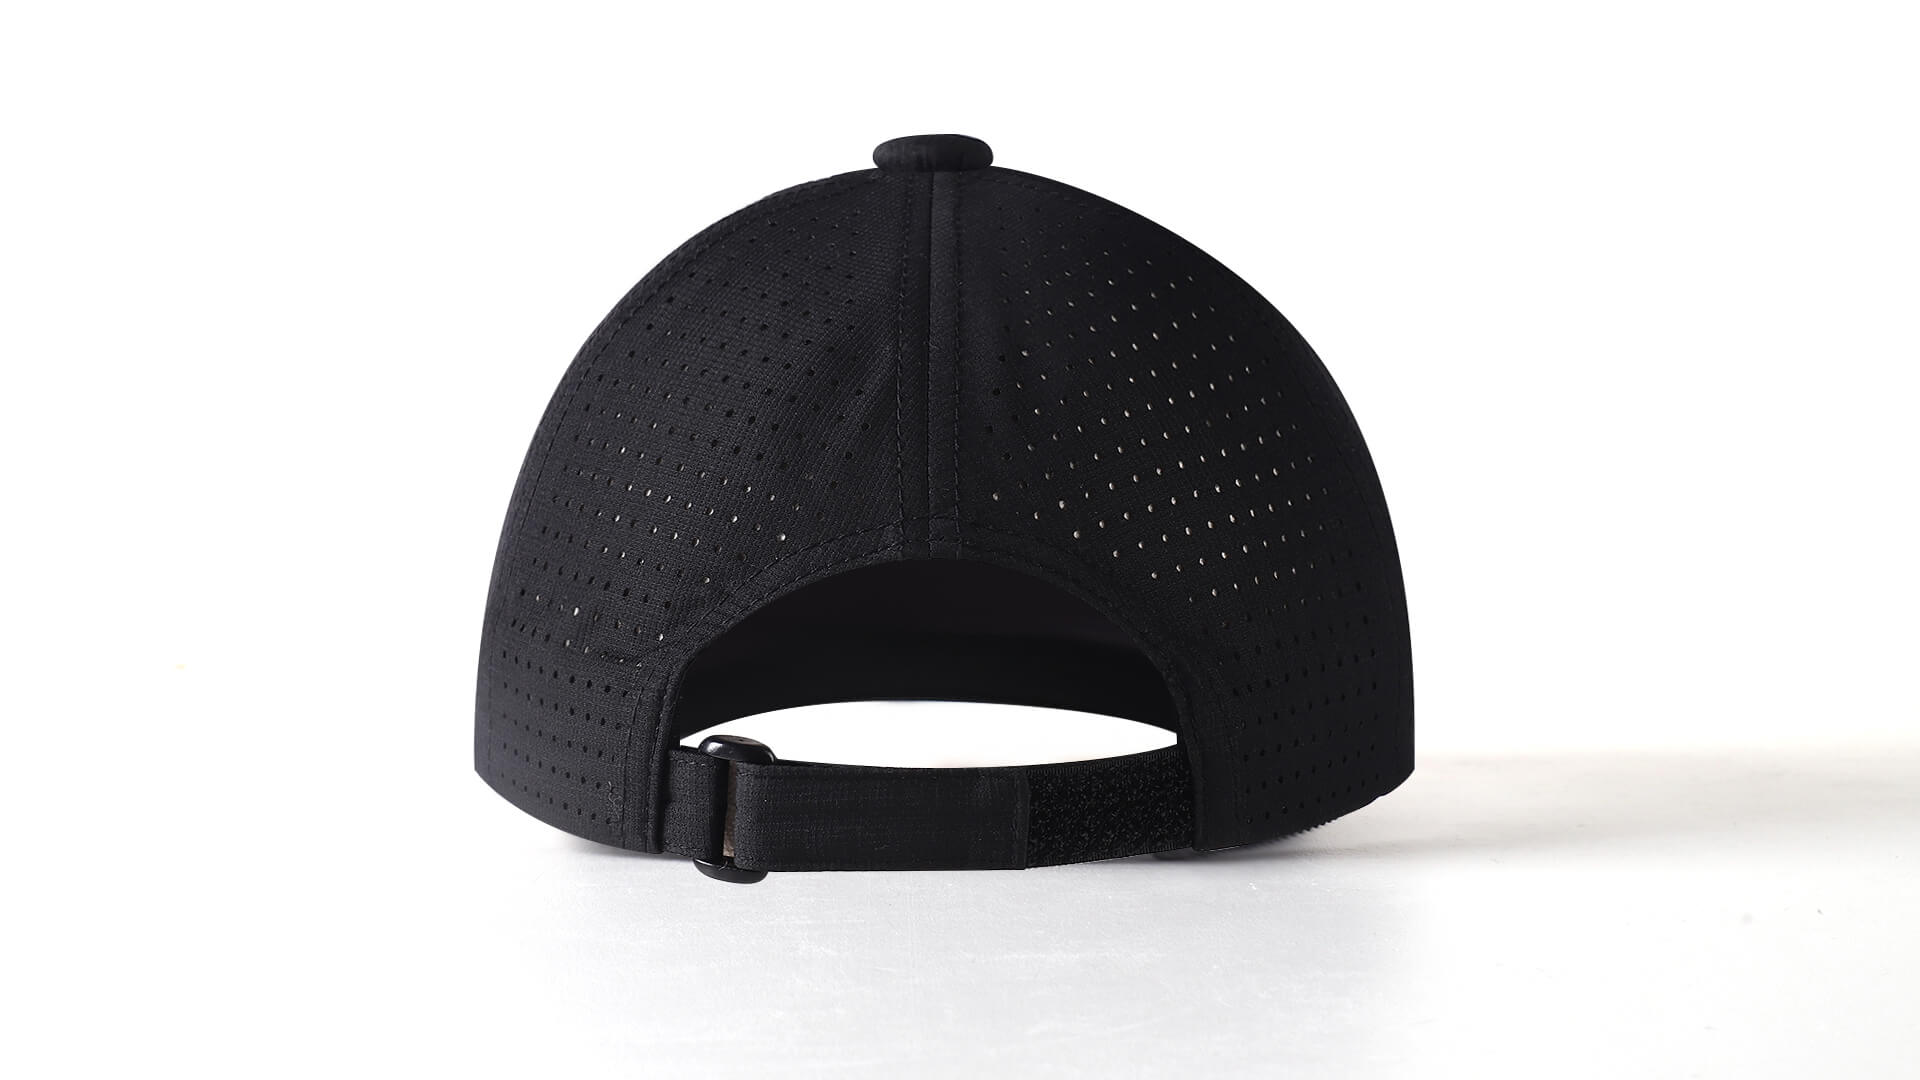 Novsight 3D Embroidered Baseball Cap for Men Women - Breathable Mesh Side, Adjustable Fit，Grey - NOVSIGHT